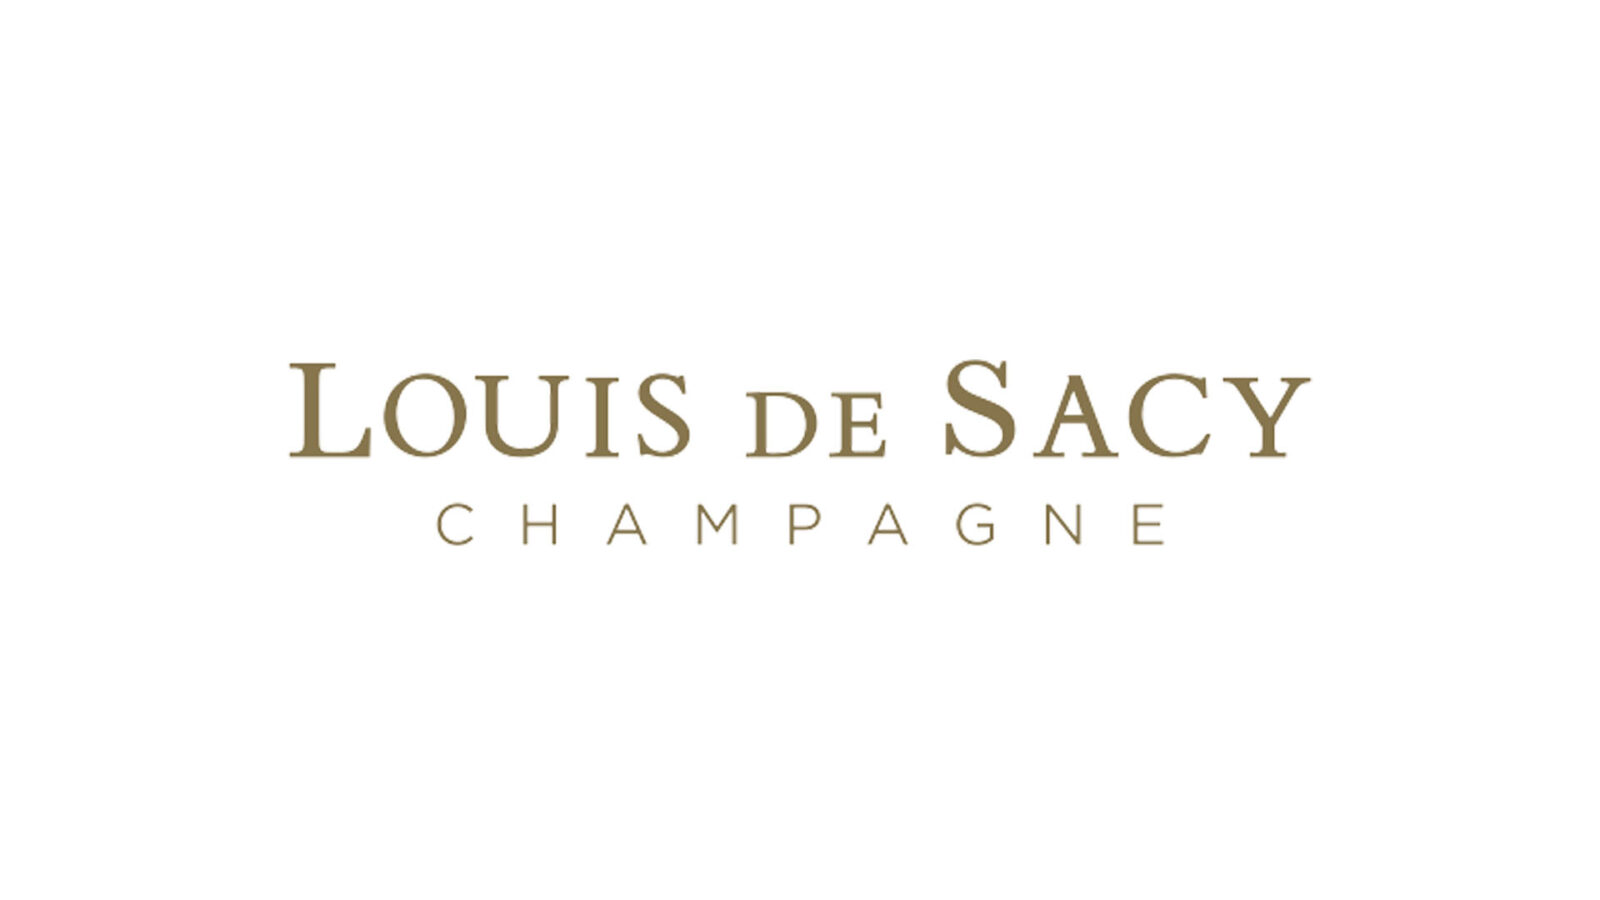 Champagne LOUIS DE SACY